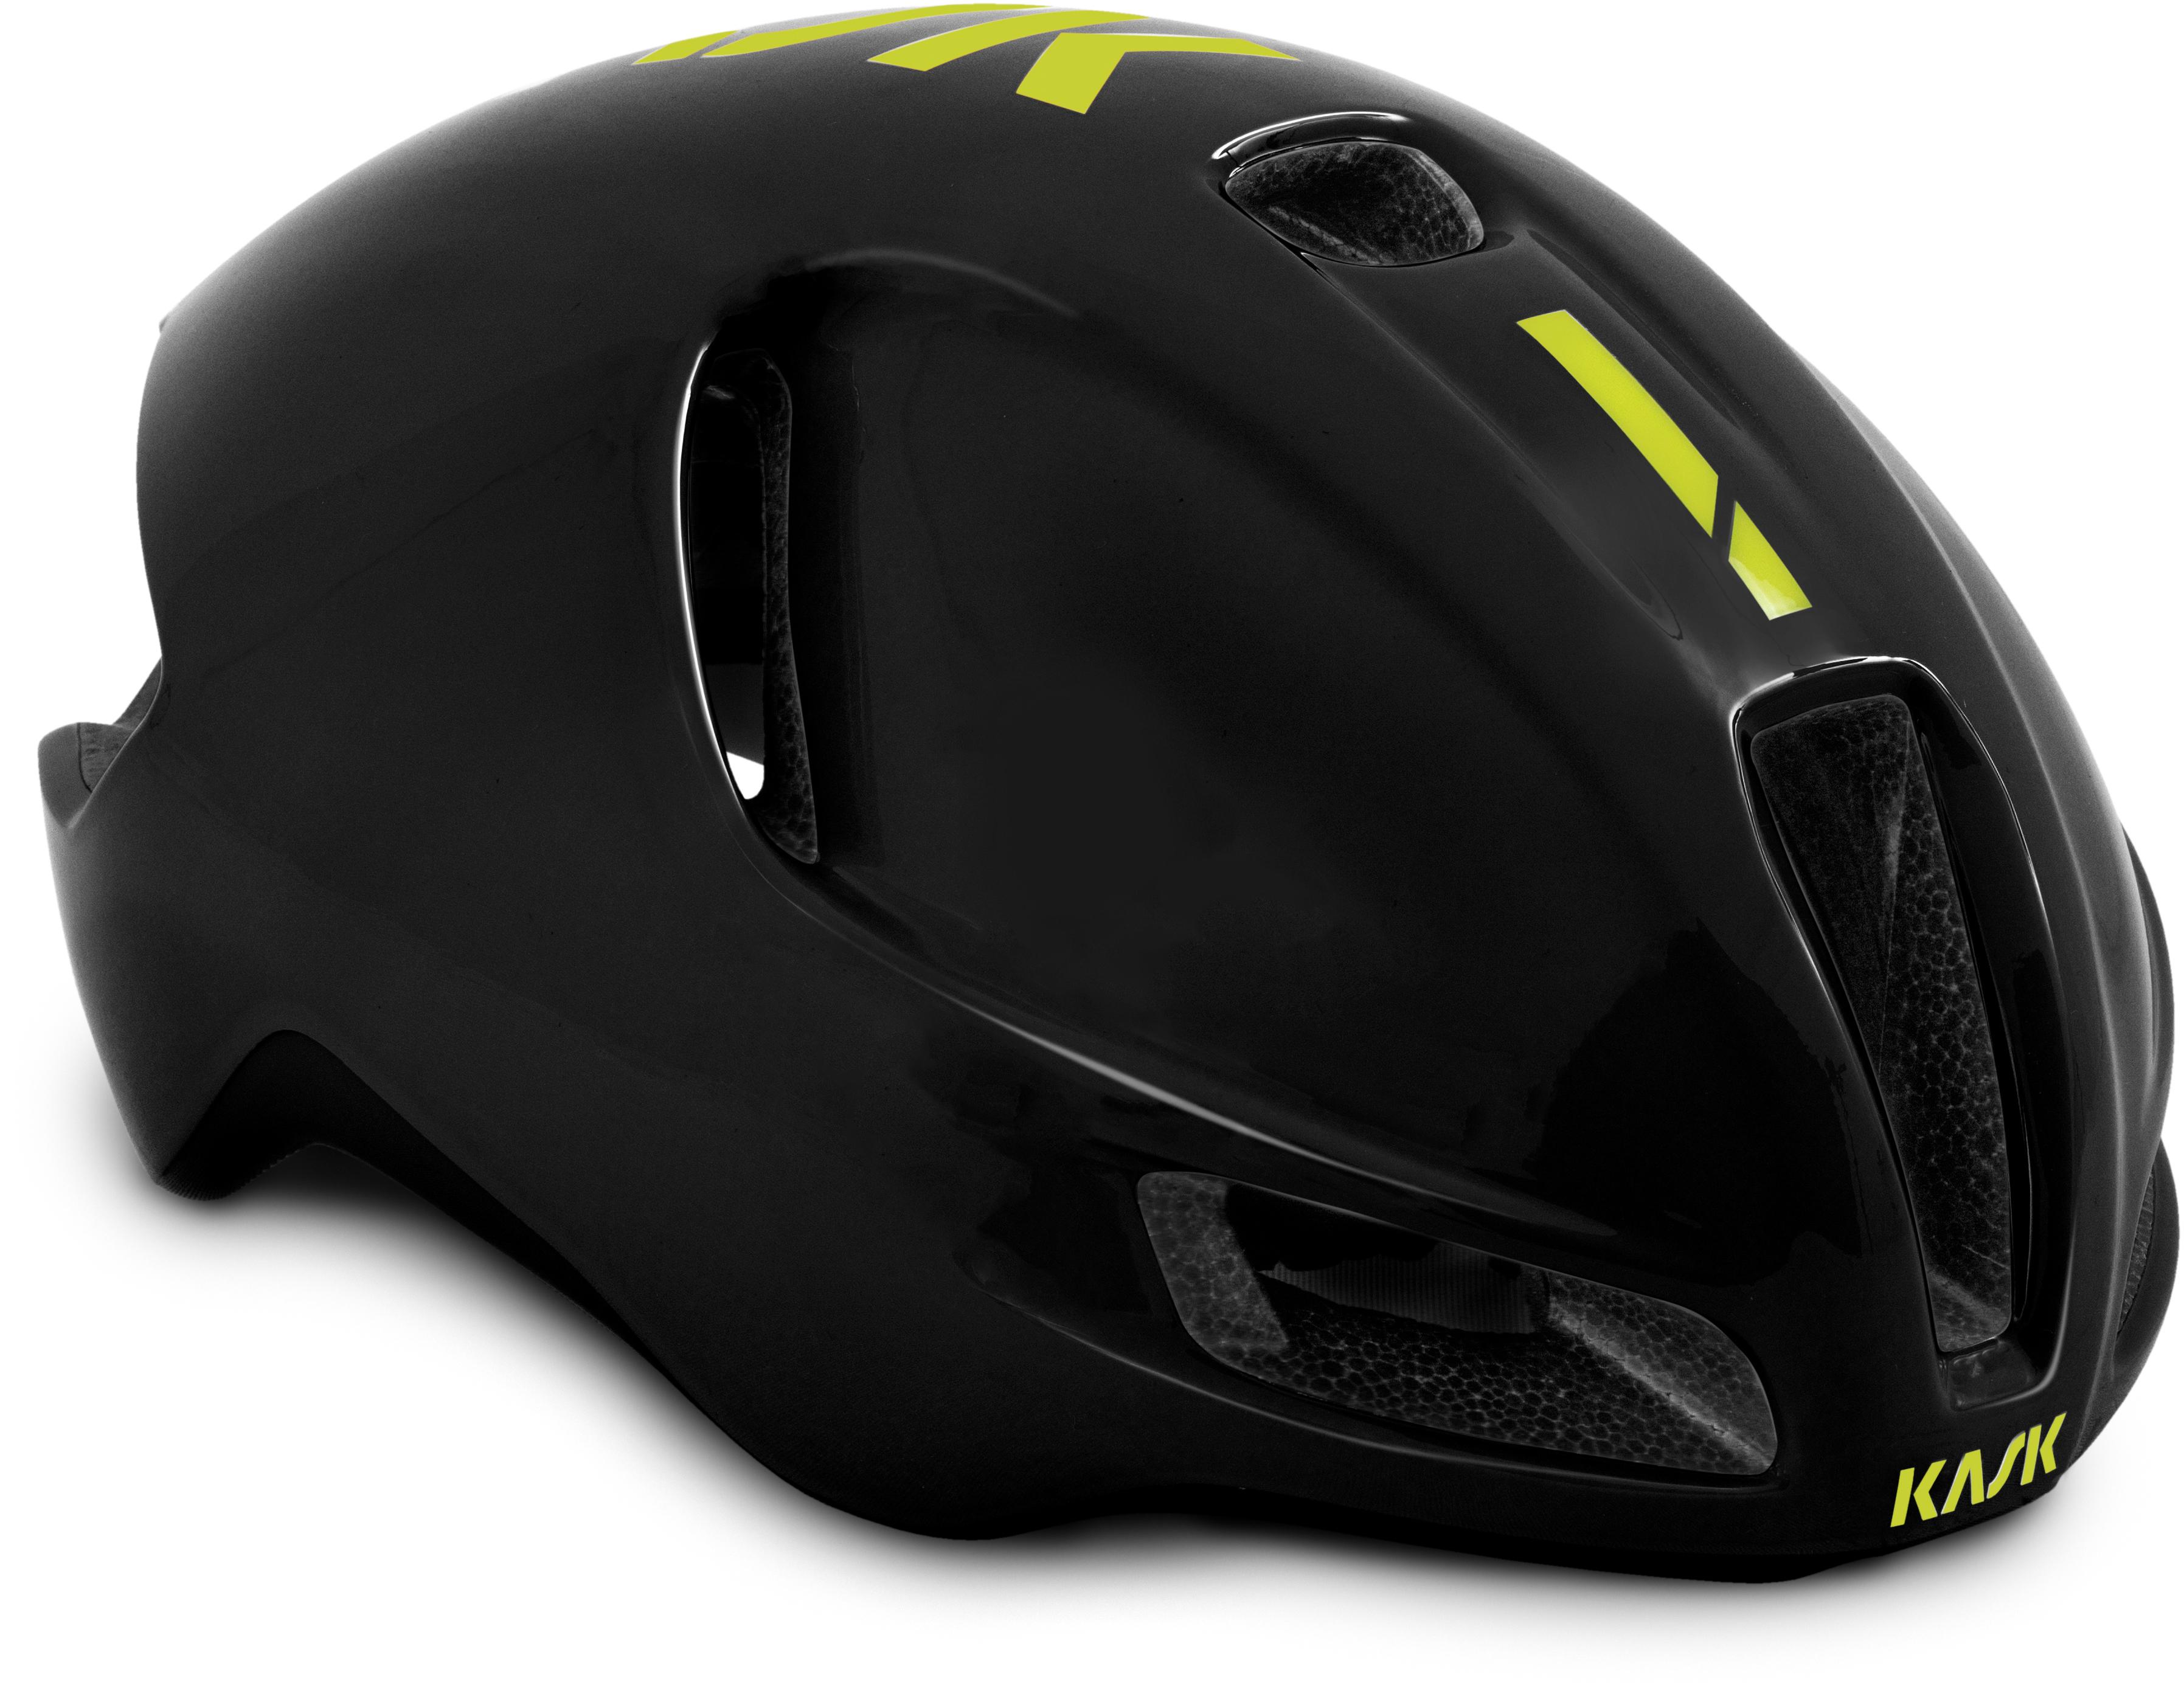 Kask Utopia Road Helmet Black/Fluo Yellow, Medium